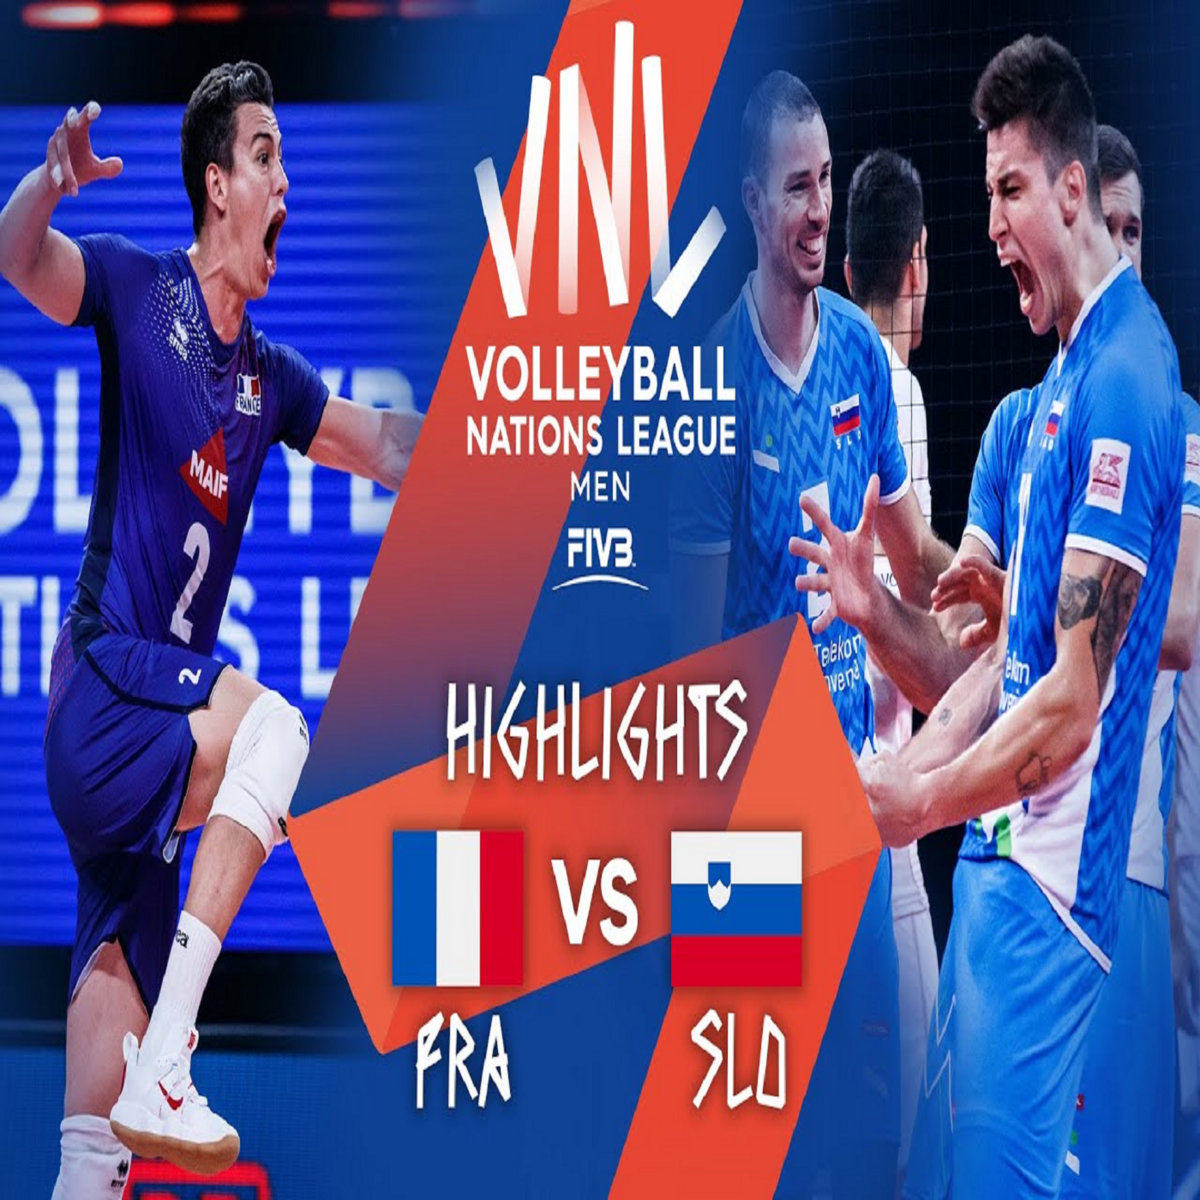 (LIVESTREAMs)* France vs Slovenia Live Stream FIBA Volleyball Live